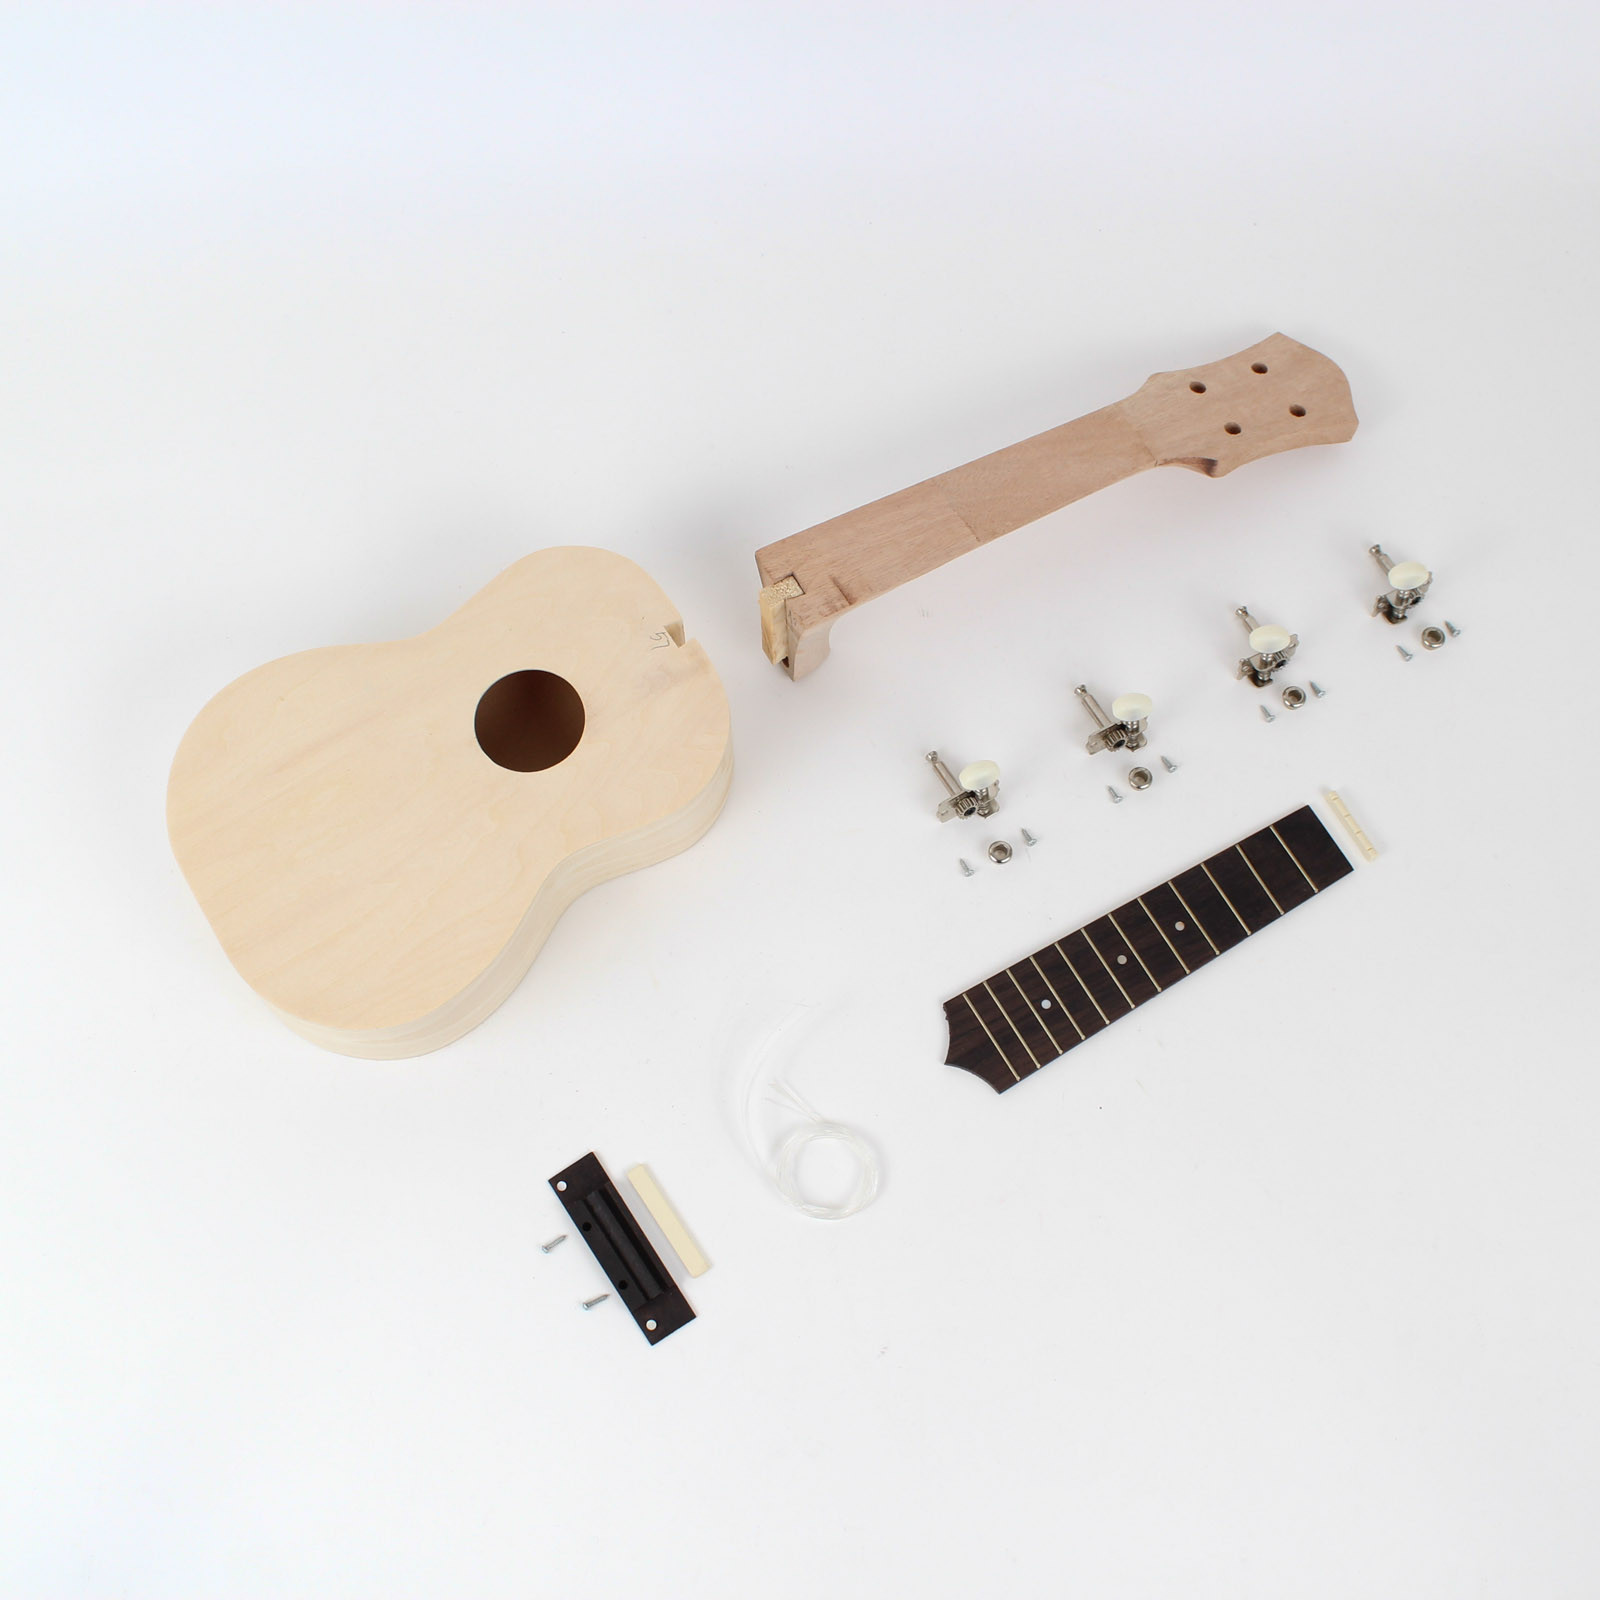 Best ideas about DIY Ukulele Kit
. Save or Pin Ukulele Kit DIY Guitars Now.